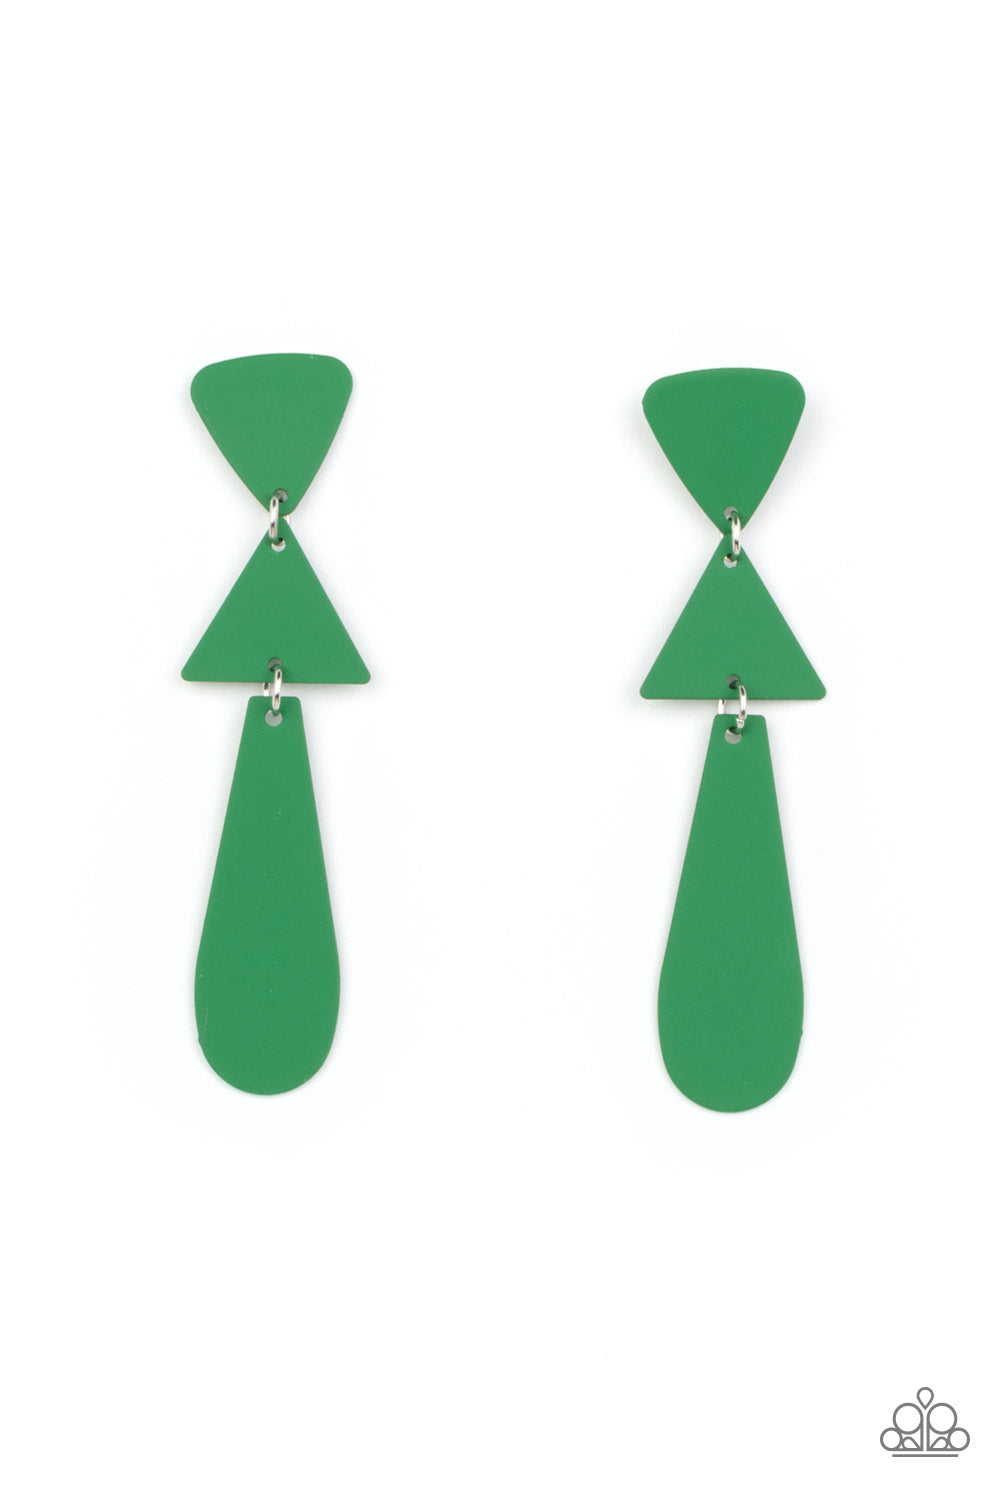 Earrings - Retro Redux - Green